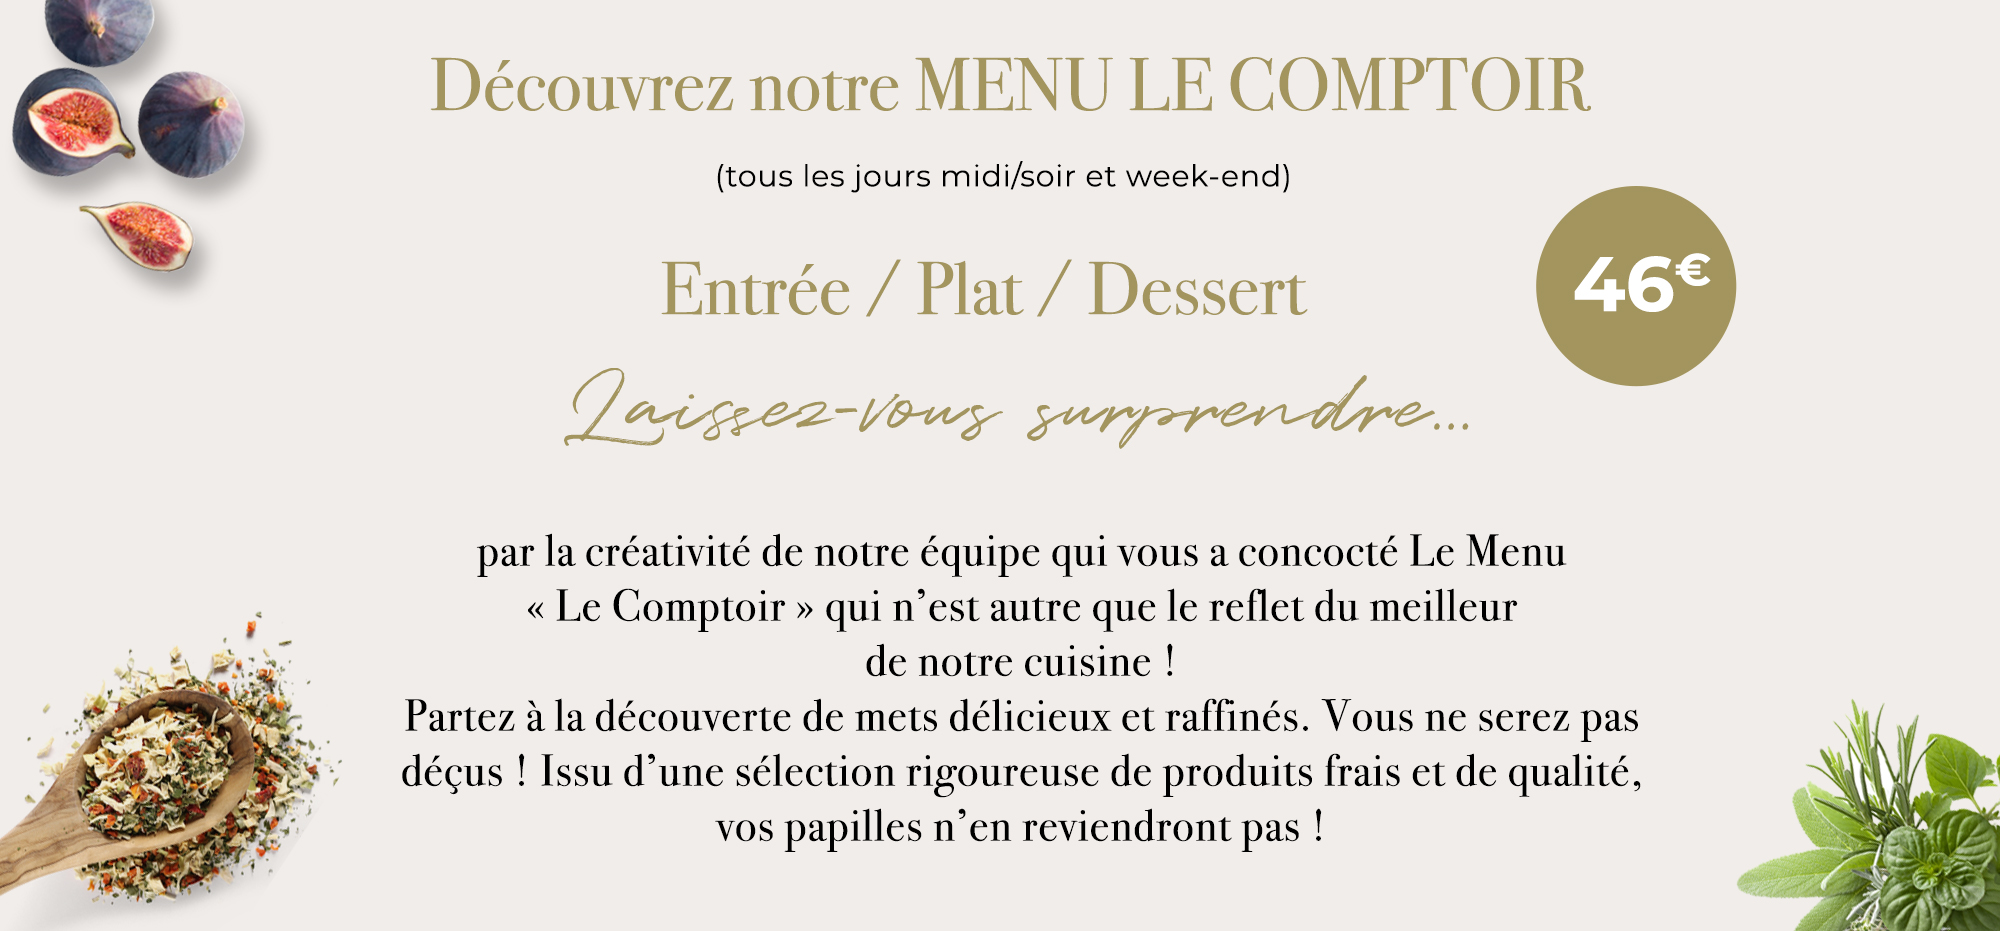 restaurant-le-comptoir-Labourse_slide_menu_slide_Menu_le_comptoir copie